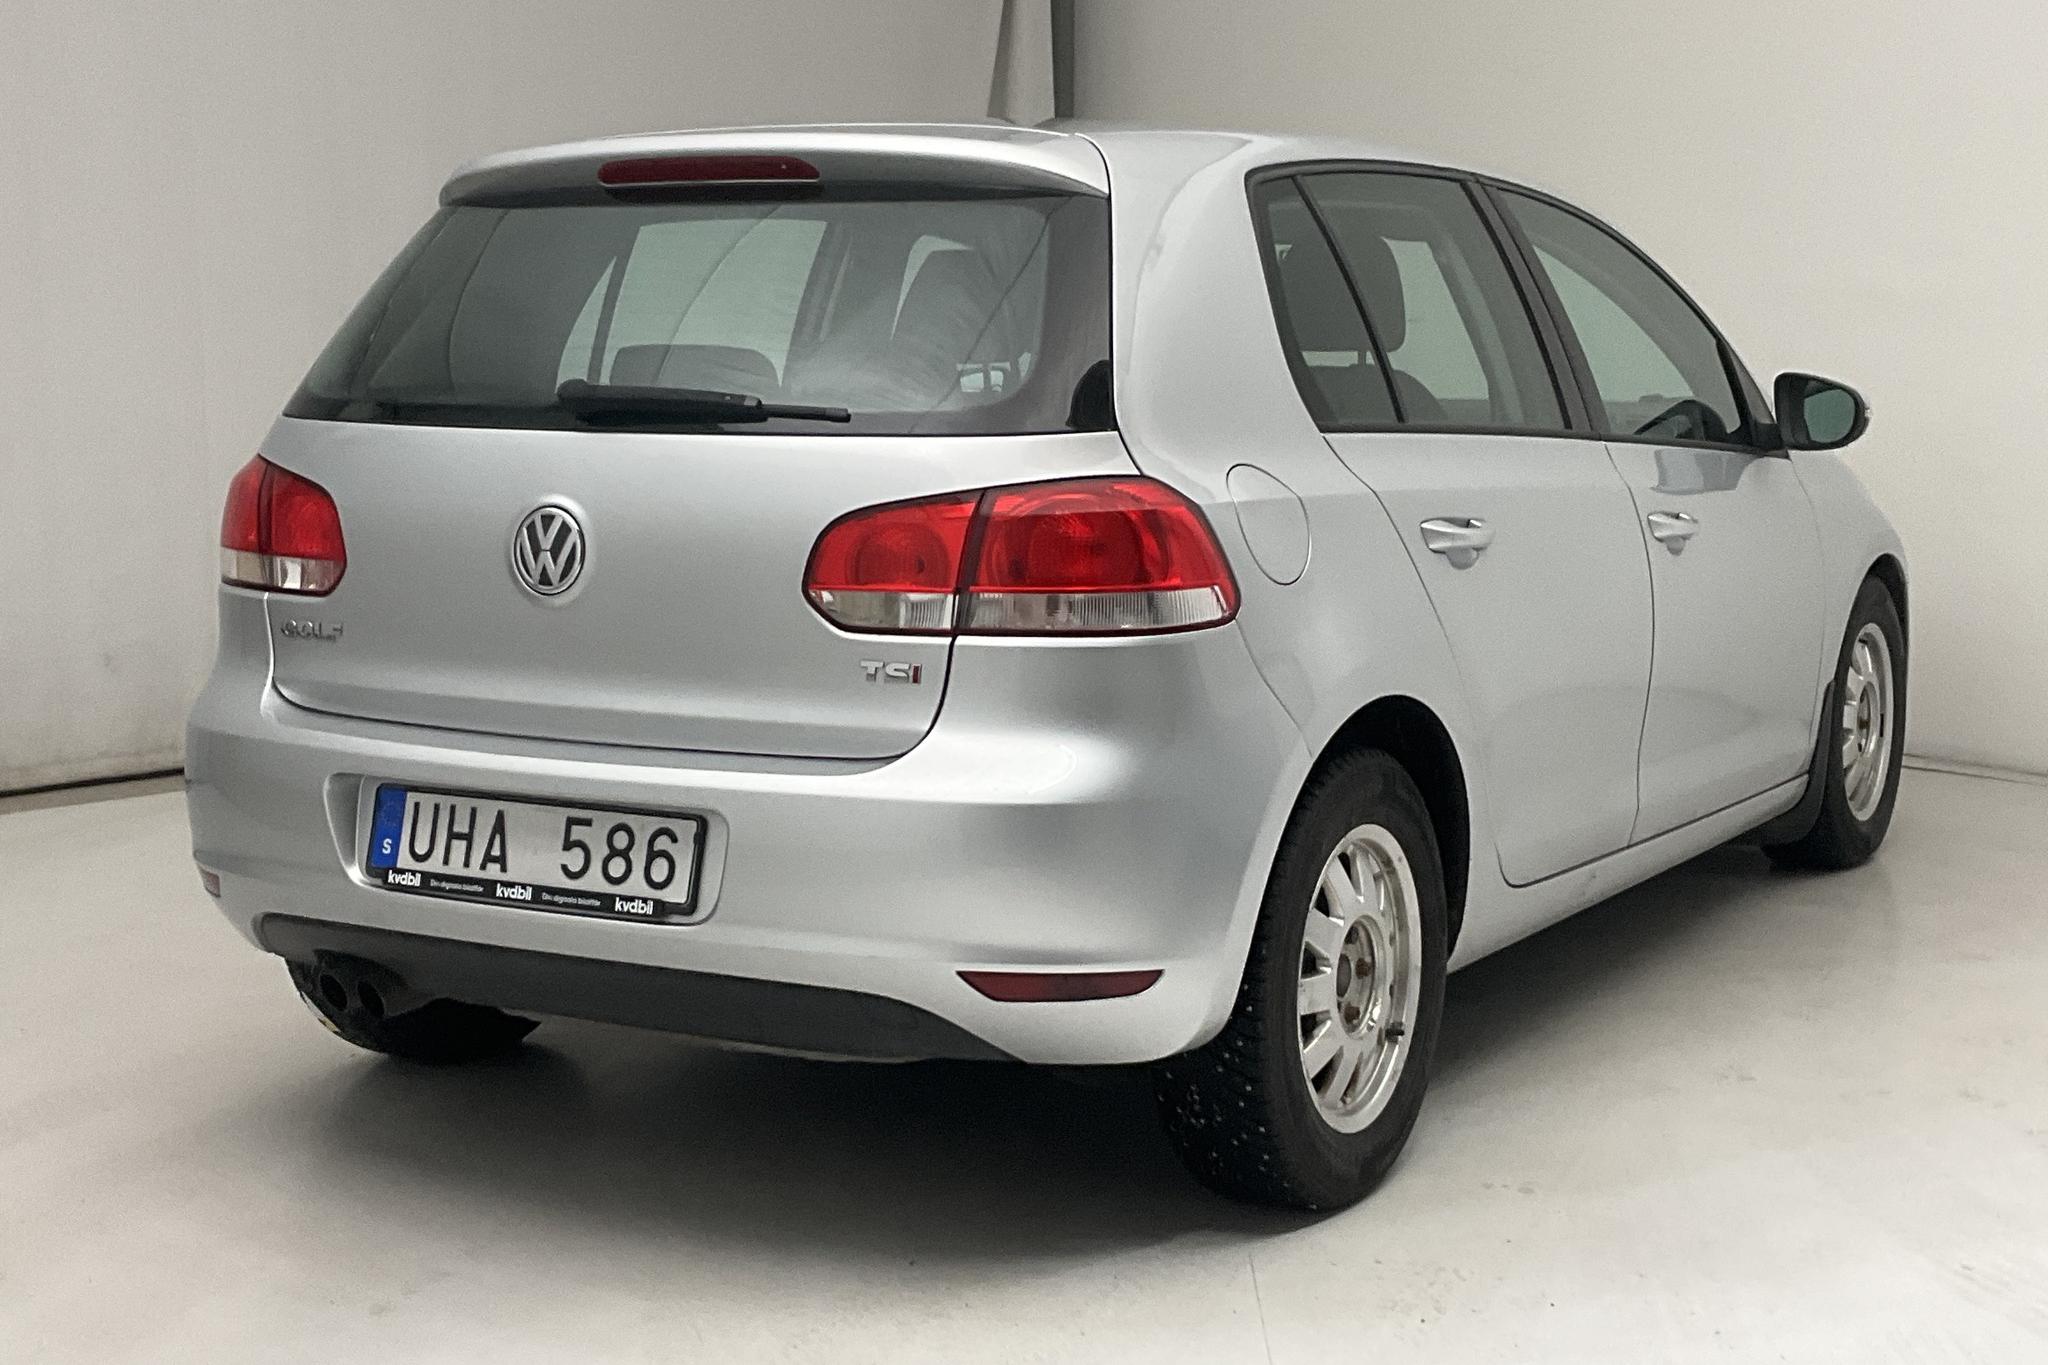 VW Golf VI 1.4 TSI 5dr (122hk) - 152 870 km - Manual - silver - 2010